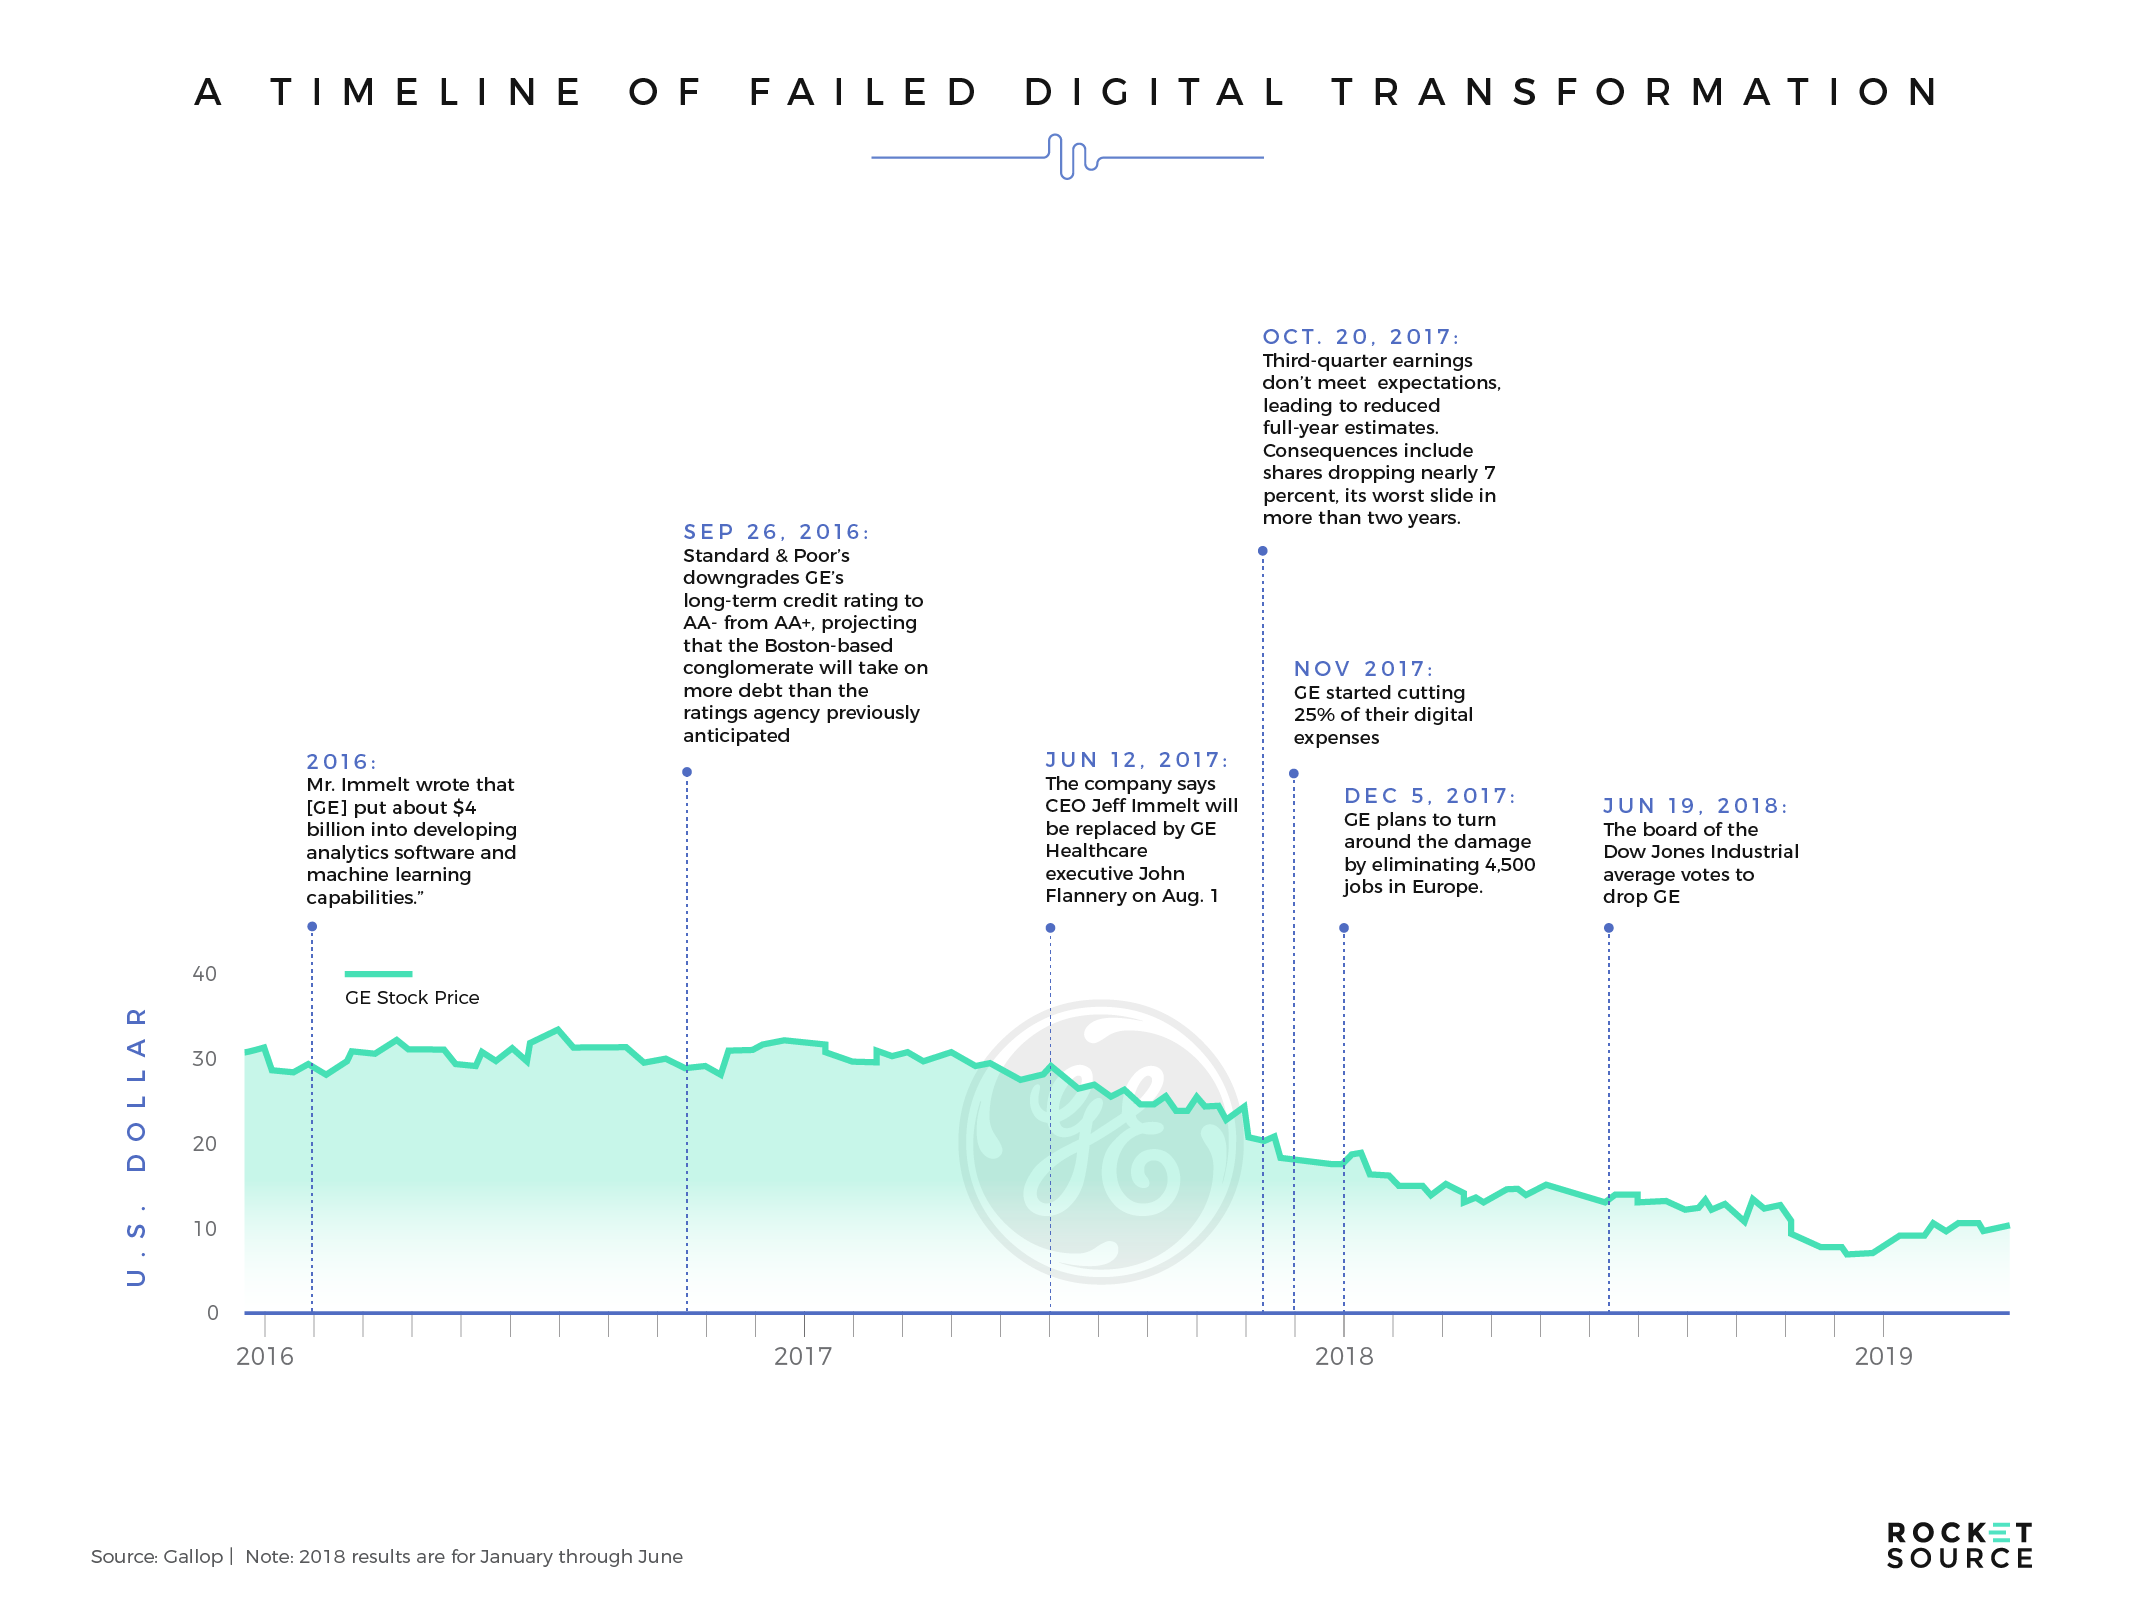 GEs digital transformation failure